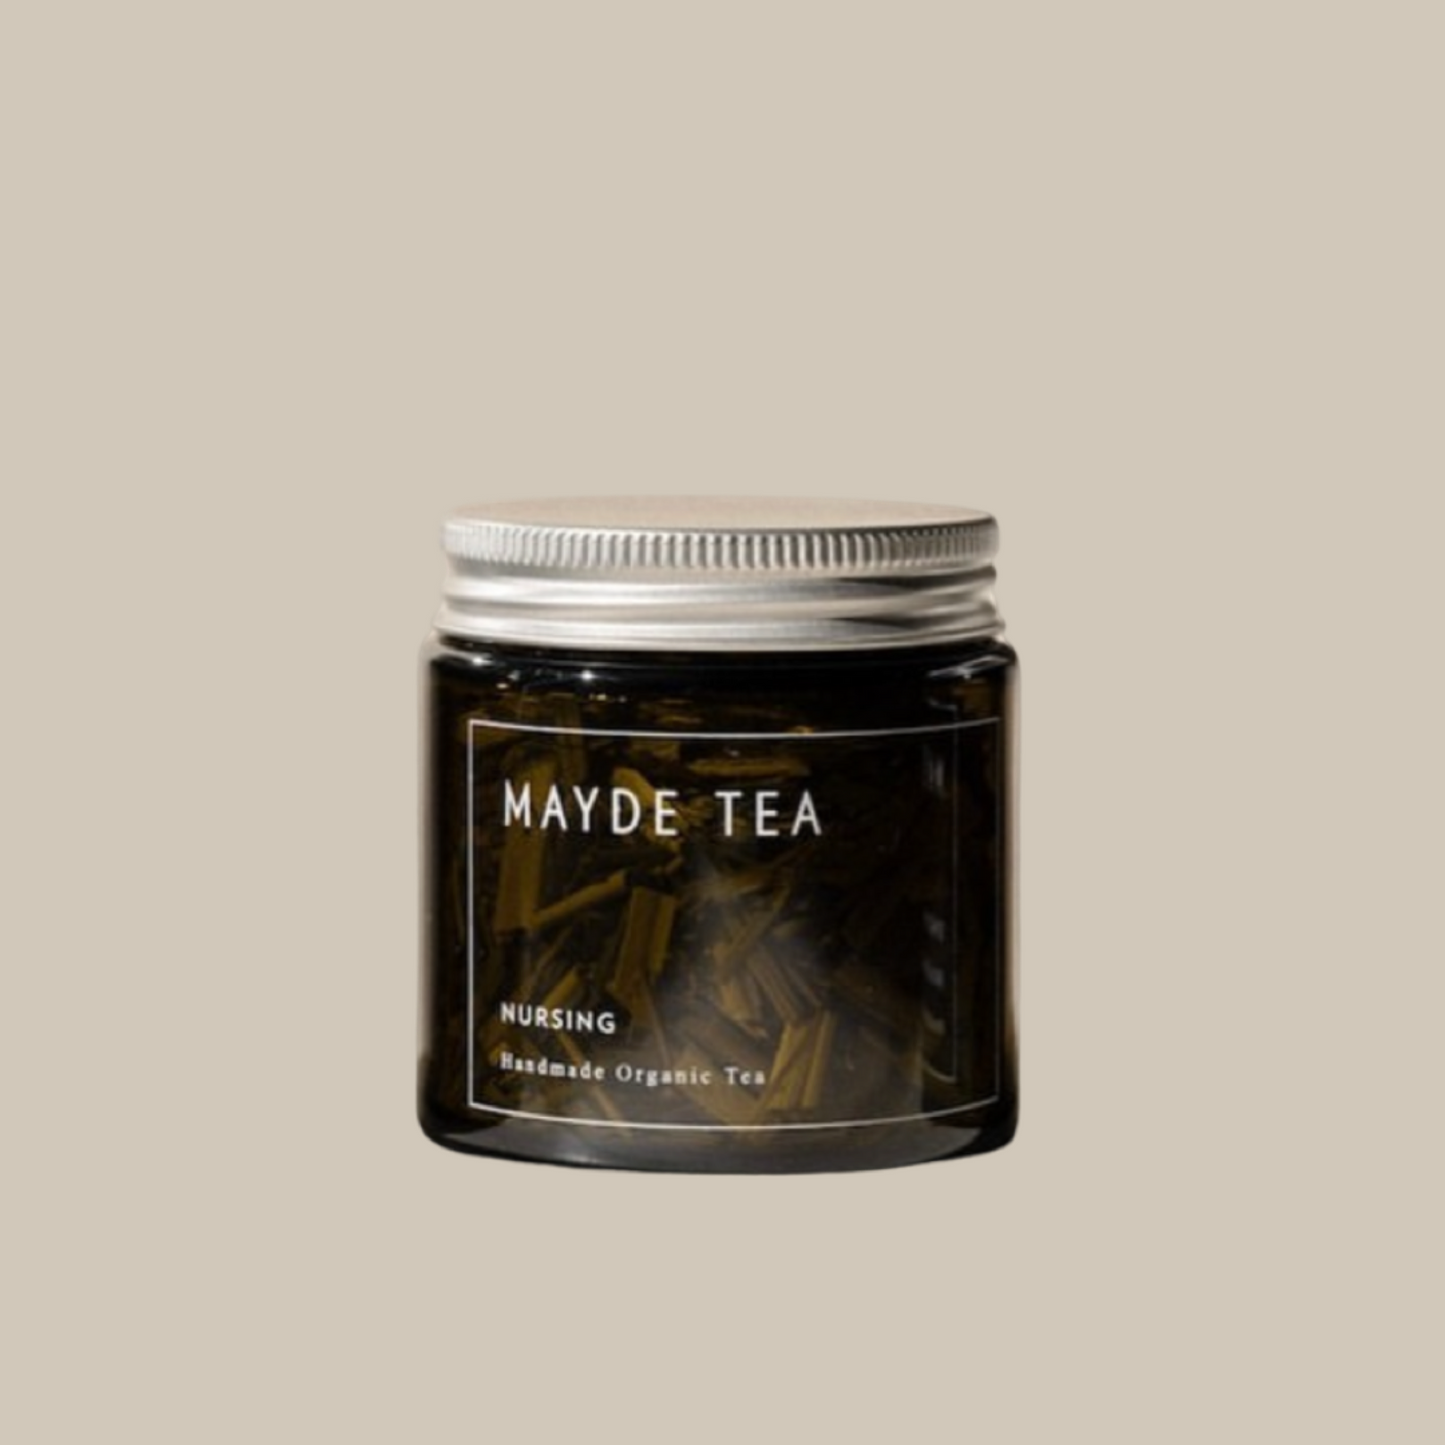 Nursing Tea Mayde Tea